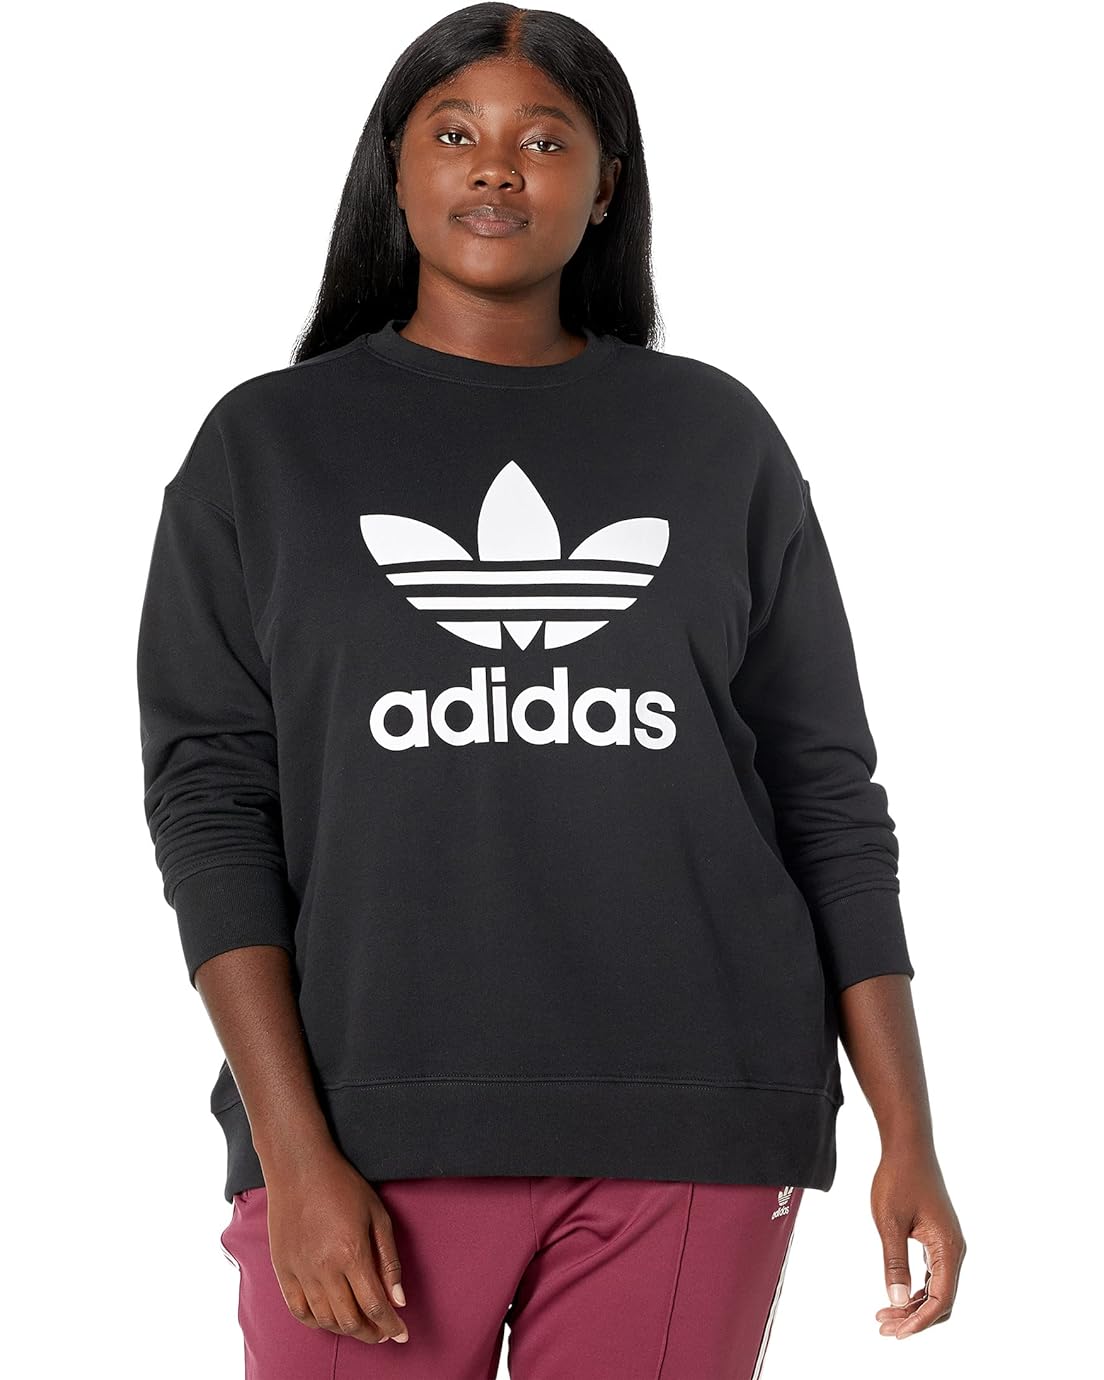 Adidas Originals Plus Size Trefoil Crew Sweatshirt